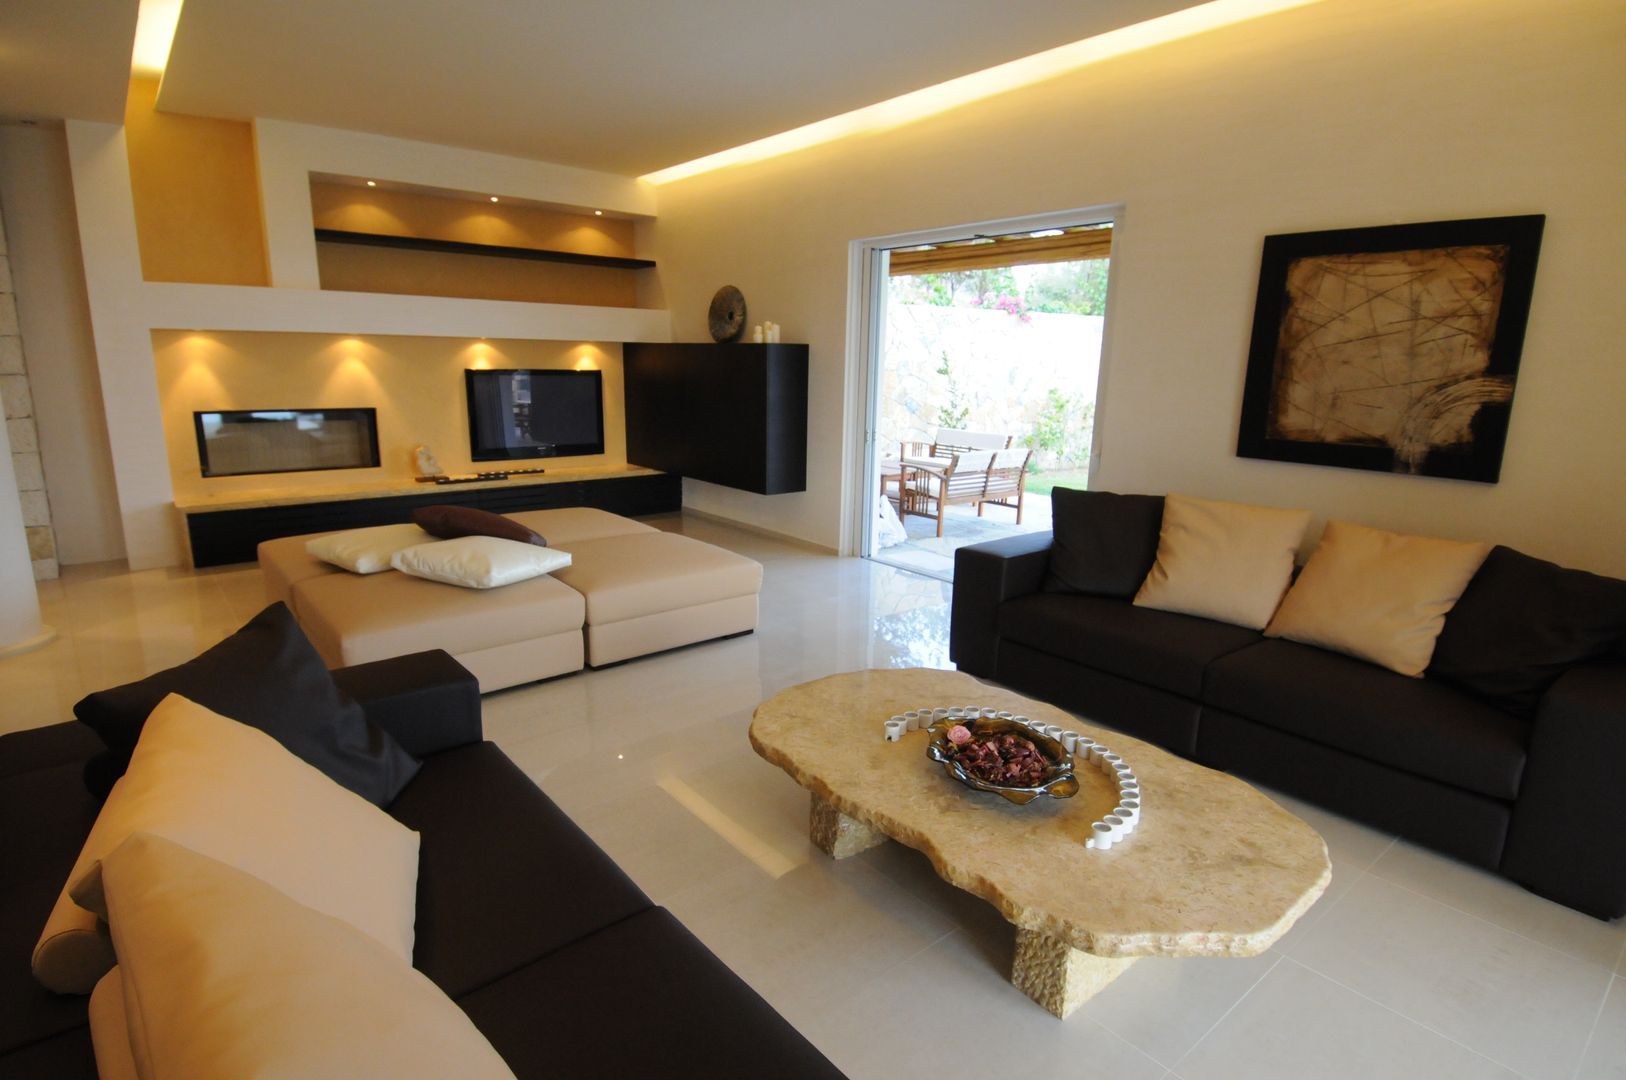 VILLA AL MARE Ermioni Grecia, CARLO CHIAPPANI interior designer CARLO CHIAPPANI interior designer Mediterranean style living room